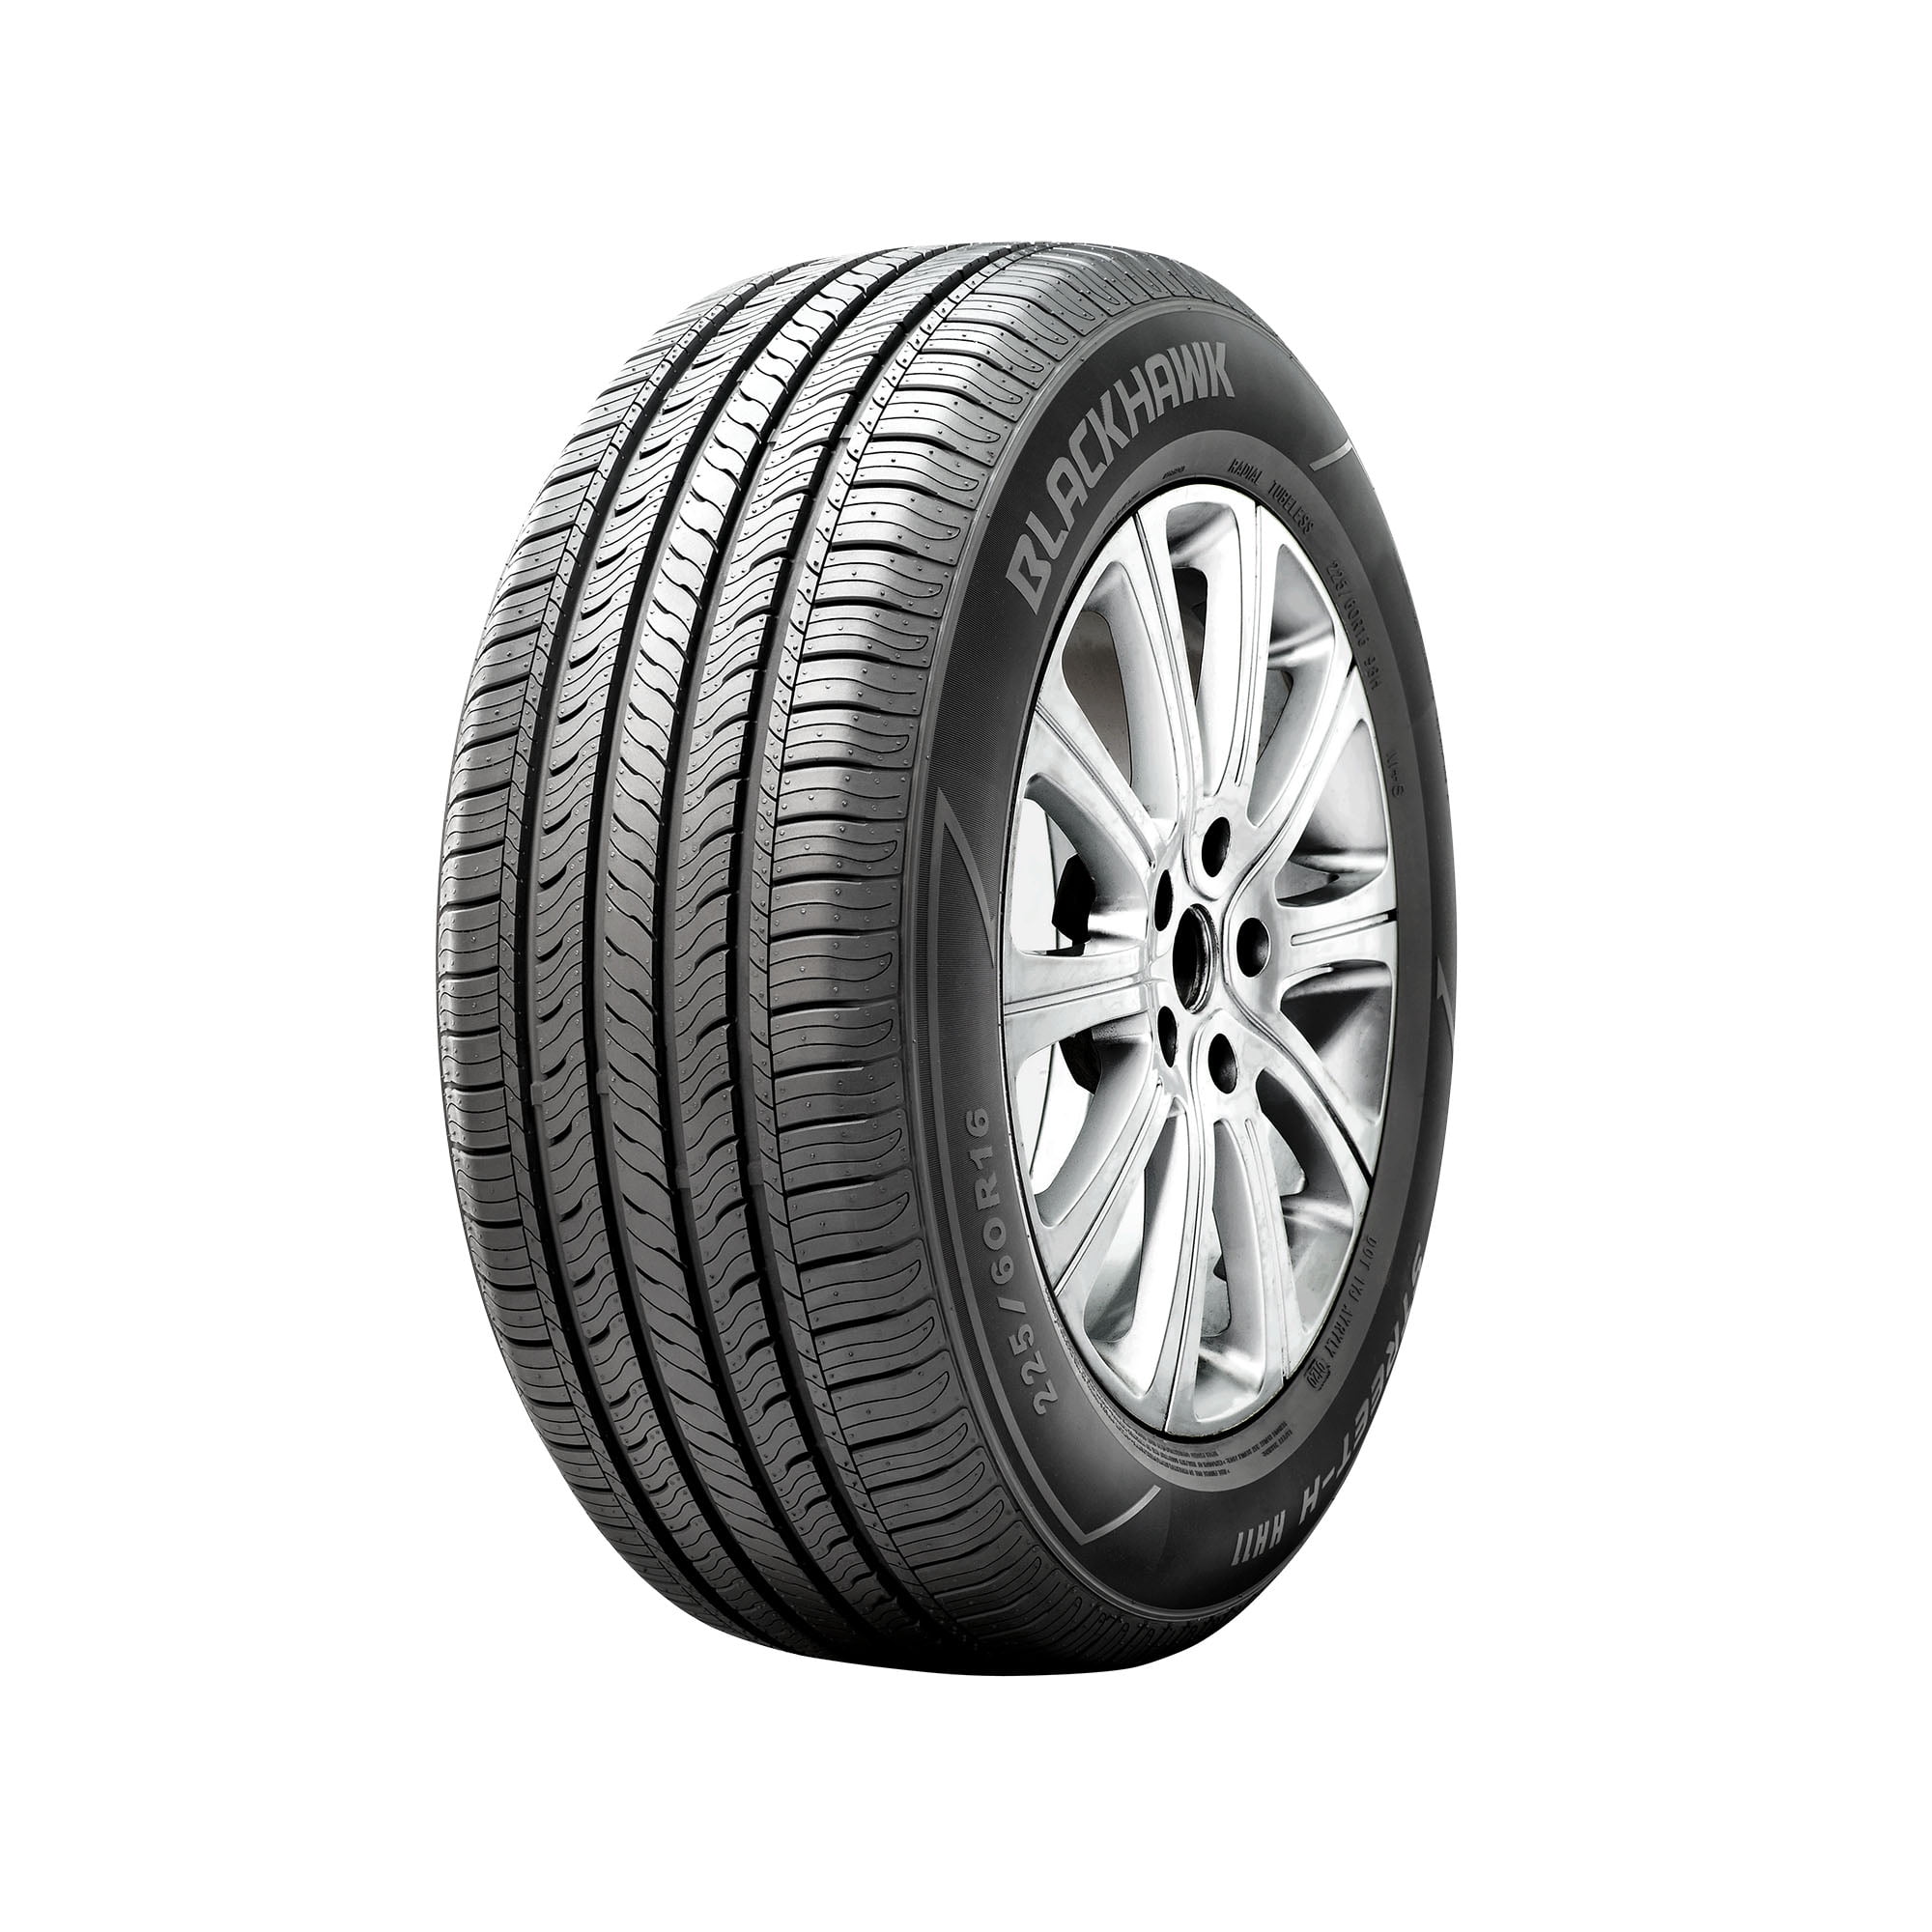 Nexen CP672 195/60R15 88 H Tire